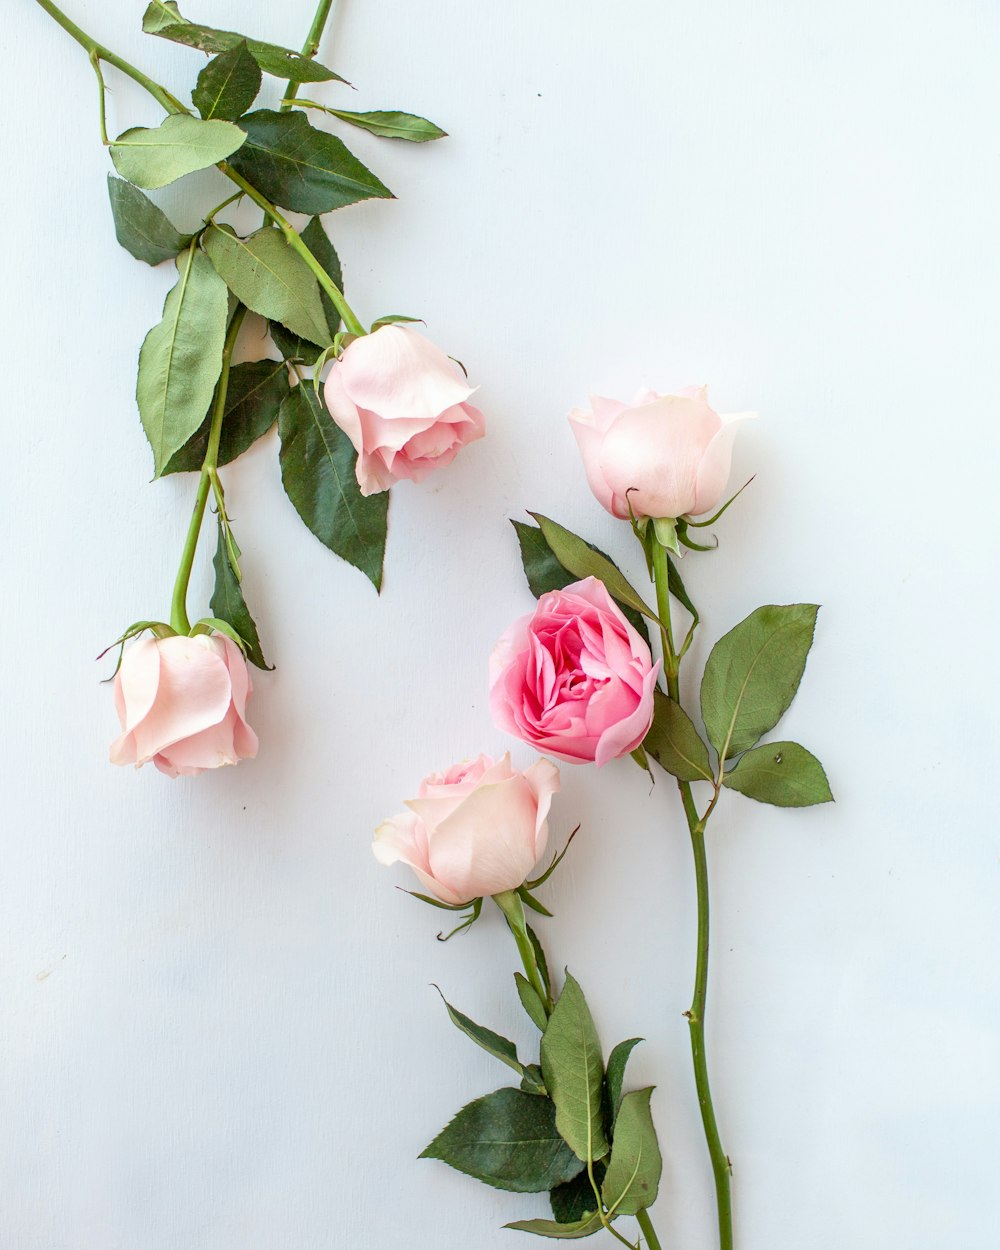 Hình ảnh của hoa hồng kết hợp với nhau cũng như nhiều loại hoa khác luôn đem lại niềm vui và cảm giác yêu đời. Bất kỳ hình ảnh nào về những bông hoa hồng cũng đều đẹp và gợi cảm. Hãy chiêm ngưỡng những bức tranh về hoa hồng để truyền cảm hứng và làm cho bạn cảm thấy tự tin.